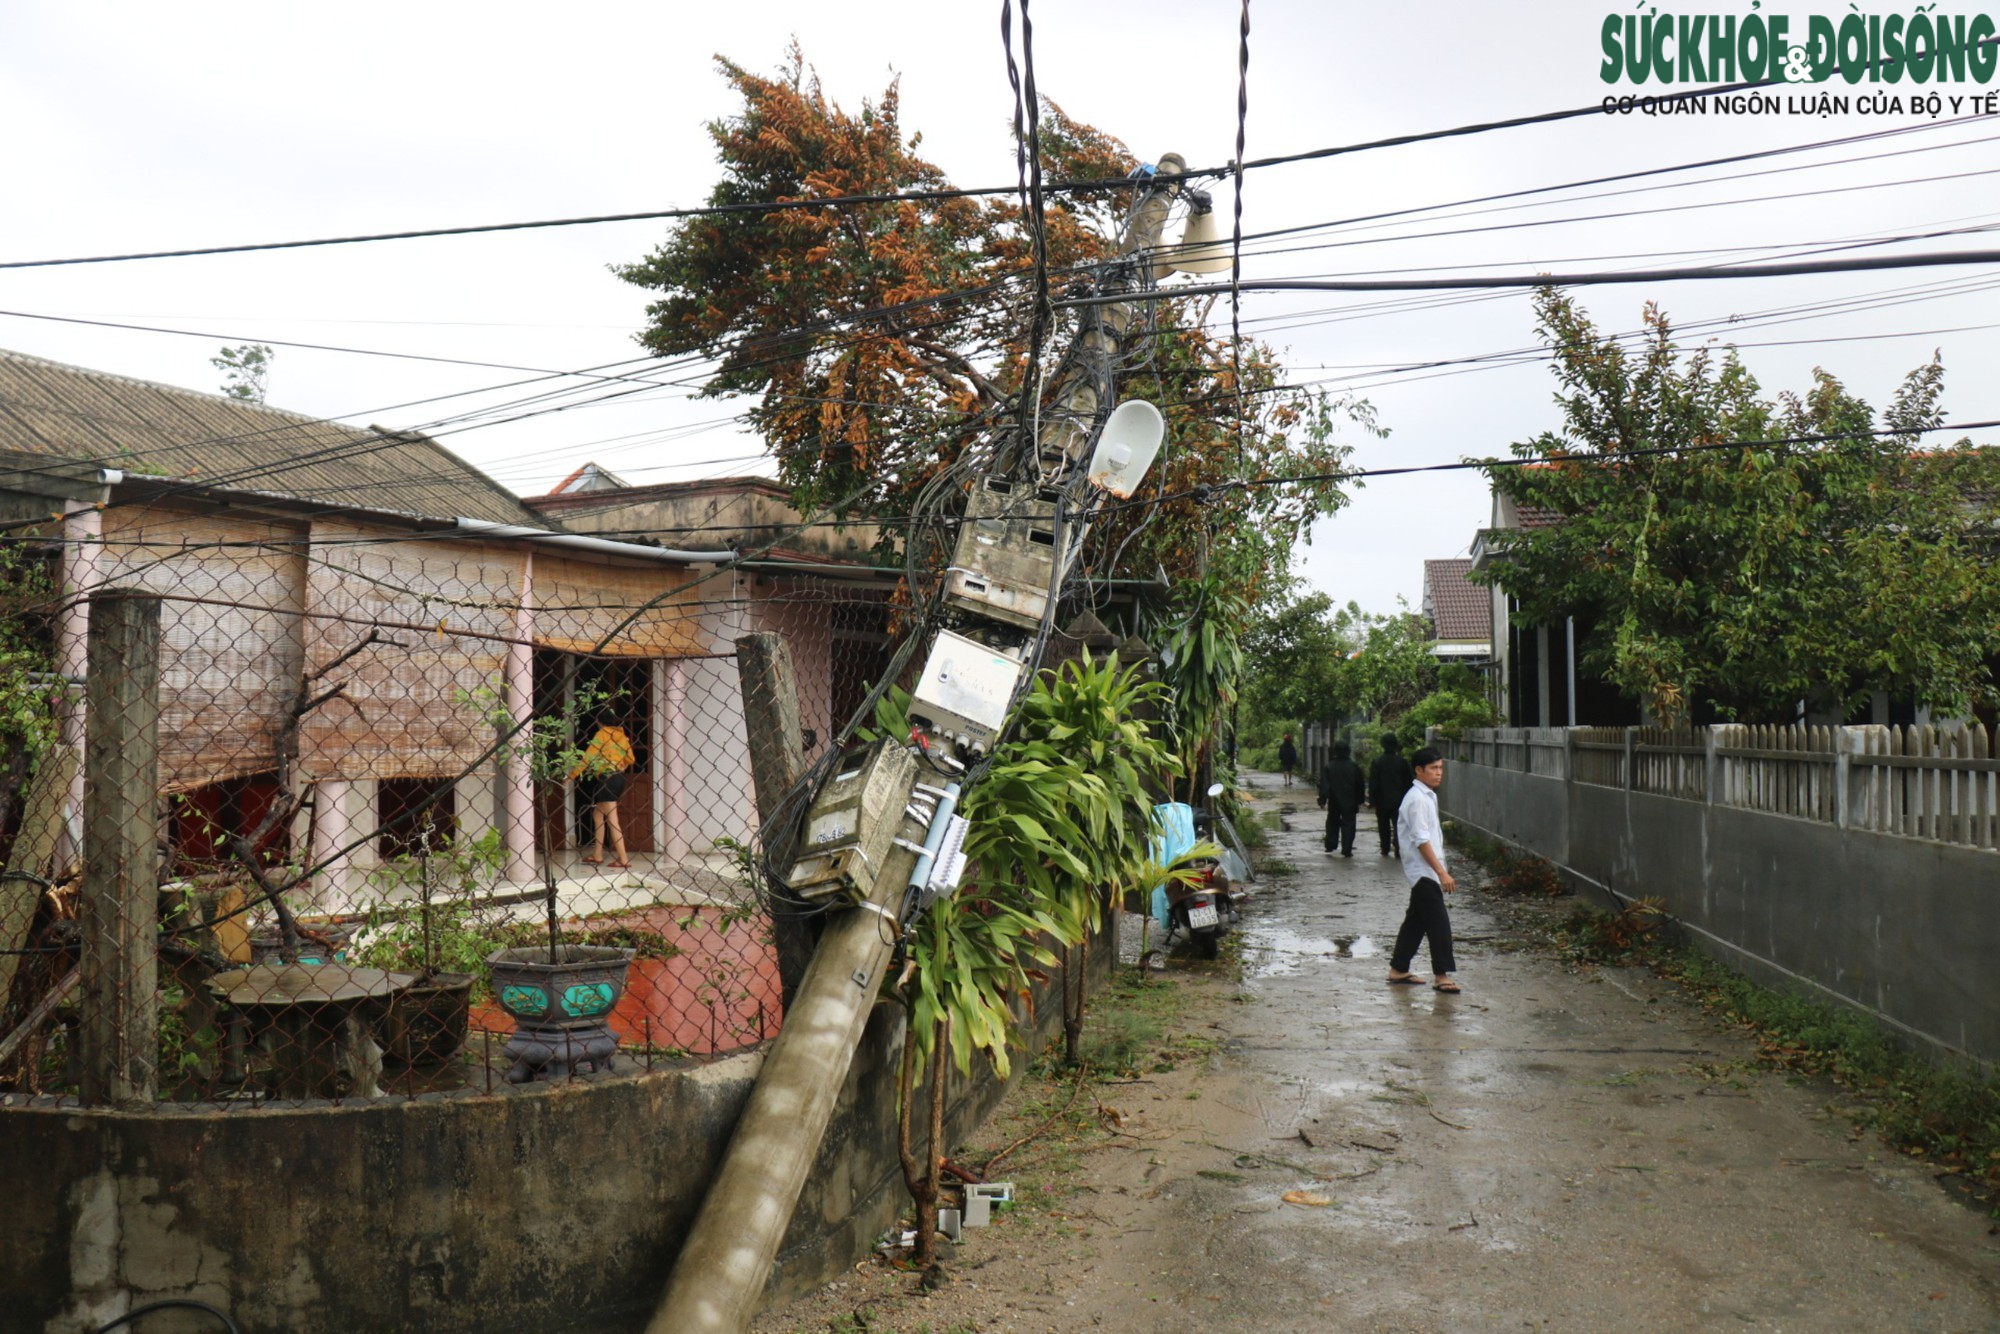 Nhà cửa tan hoang sau bão Noru, người dân miền biển Thừa Thiên Huế vẫn chưa hết bàng hoàng - Ảnh 3.